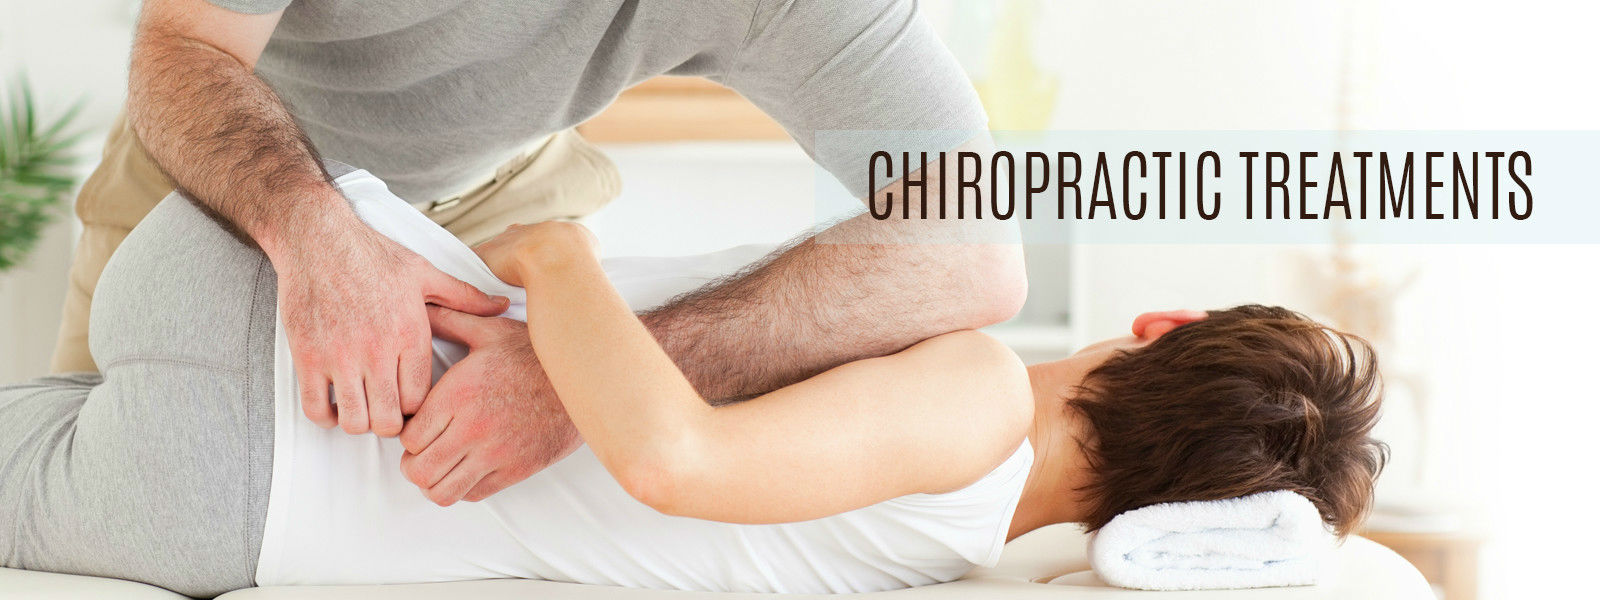 Chiropractic marketing